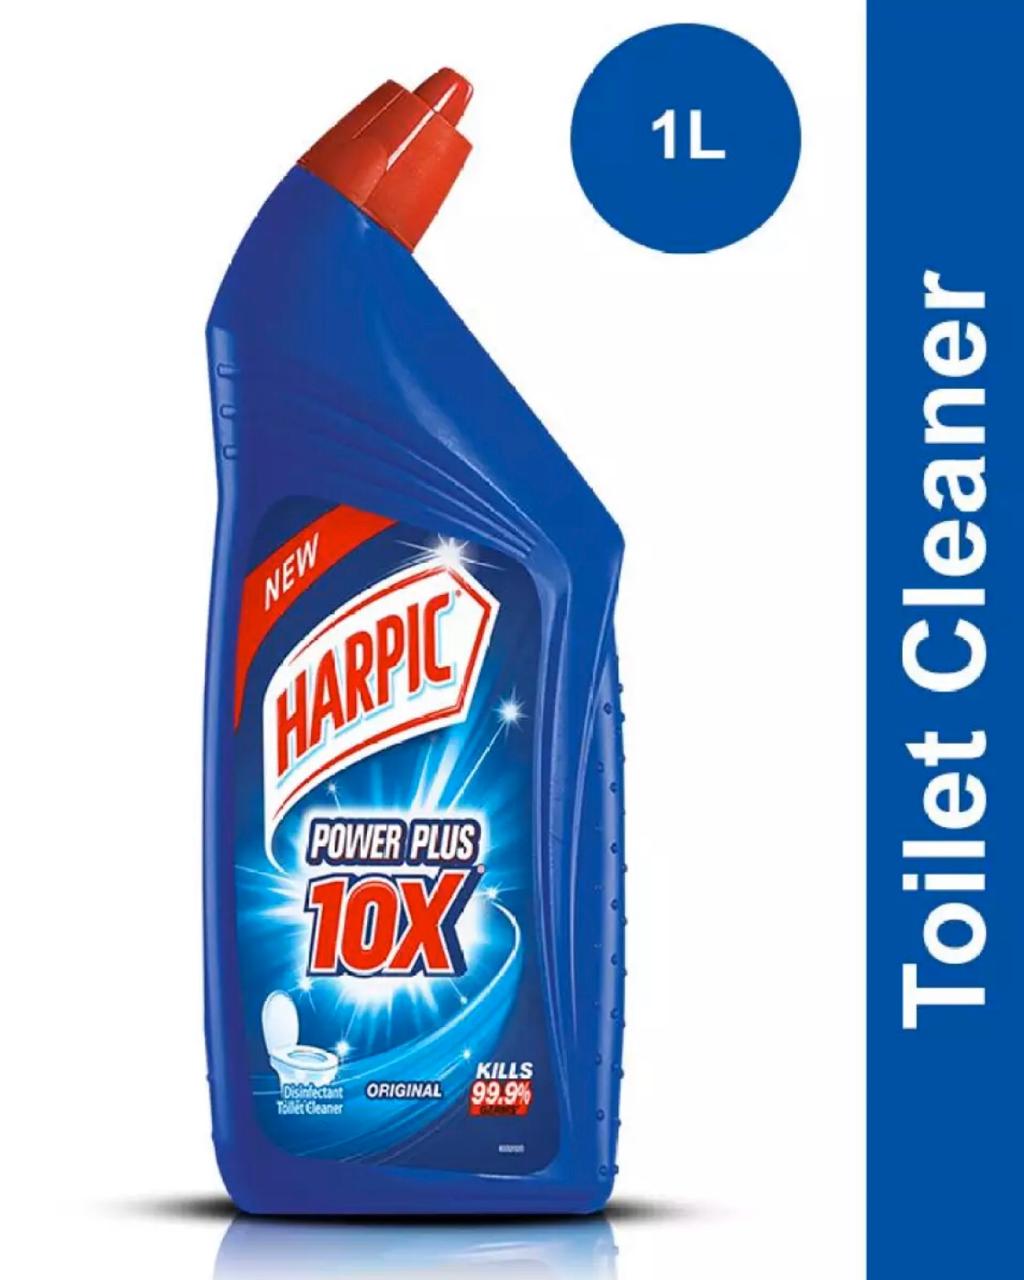 Harpic 10x power plus - 1 LITRE Original Liquid Toilet Cleaner